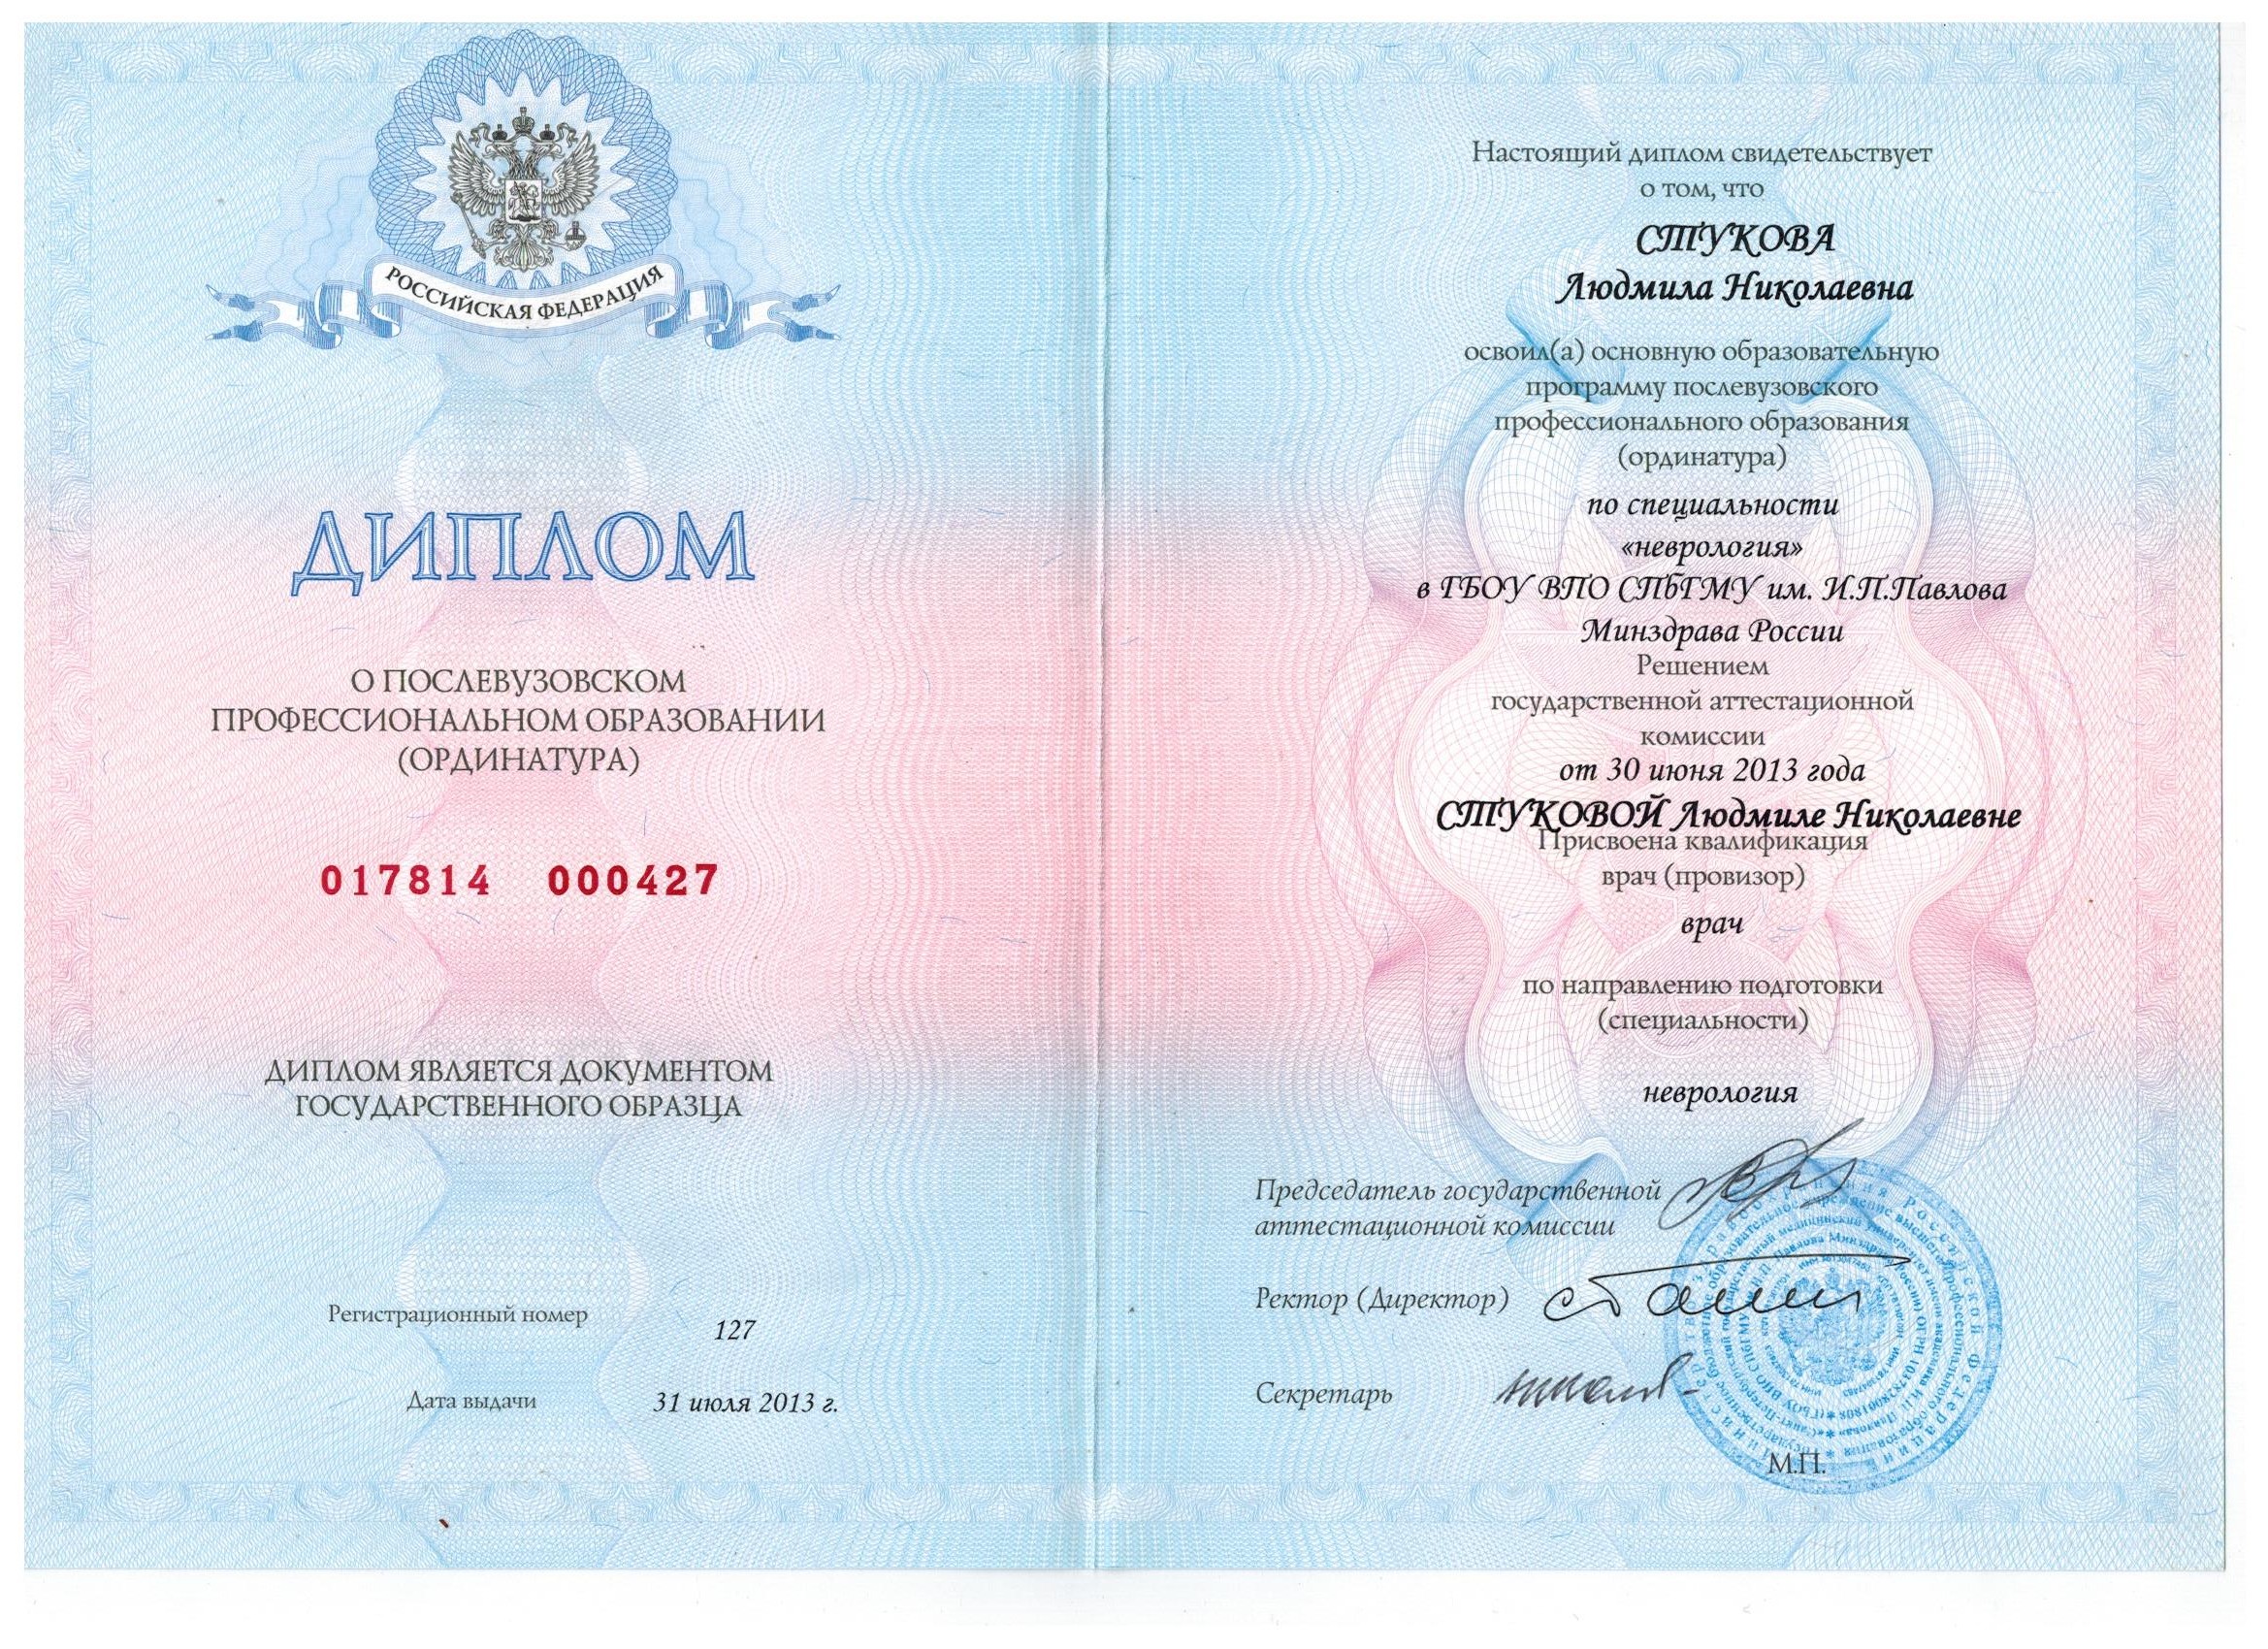 Как врачу уехать за границу из россии в 2023: подтверждение диплома, заработок